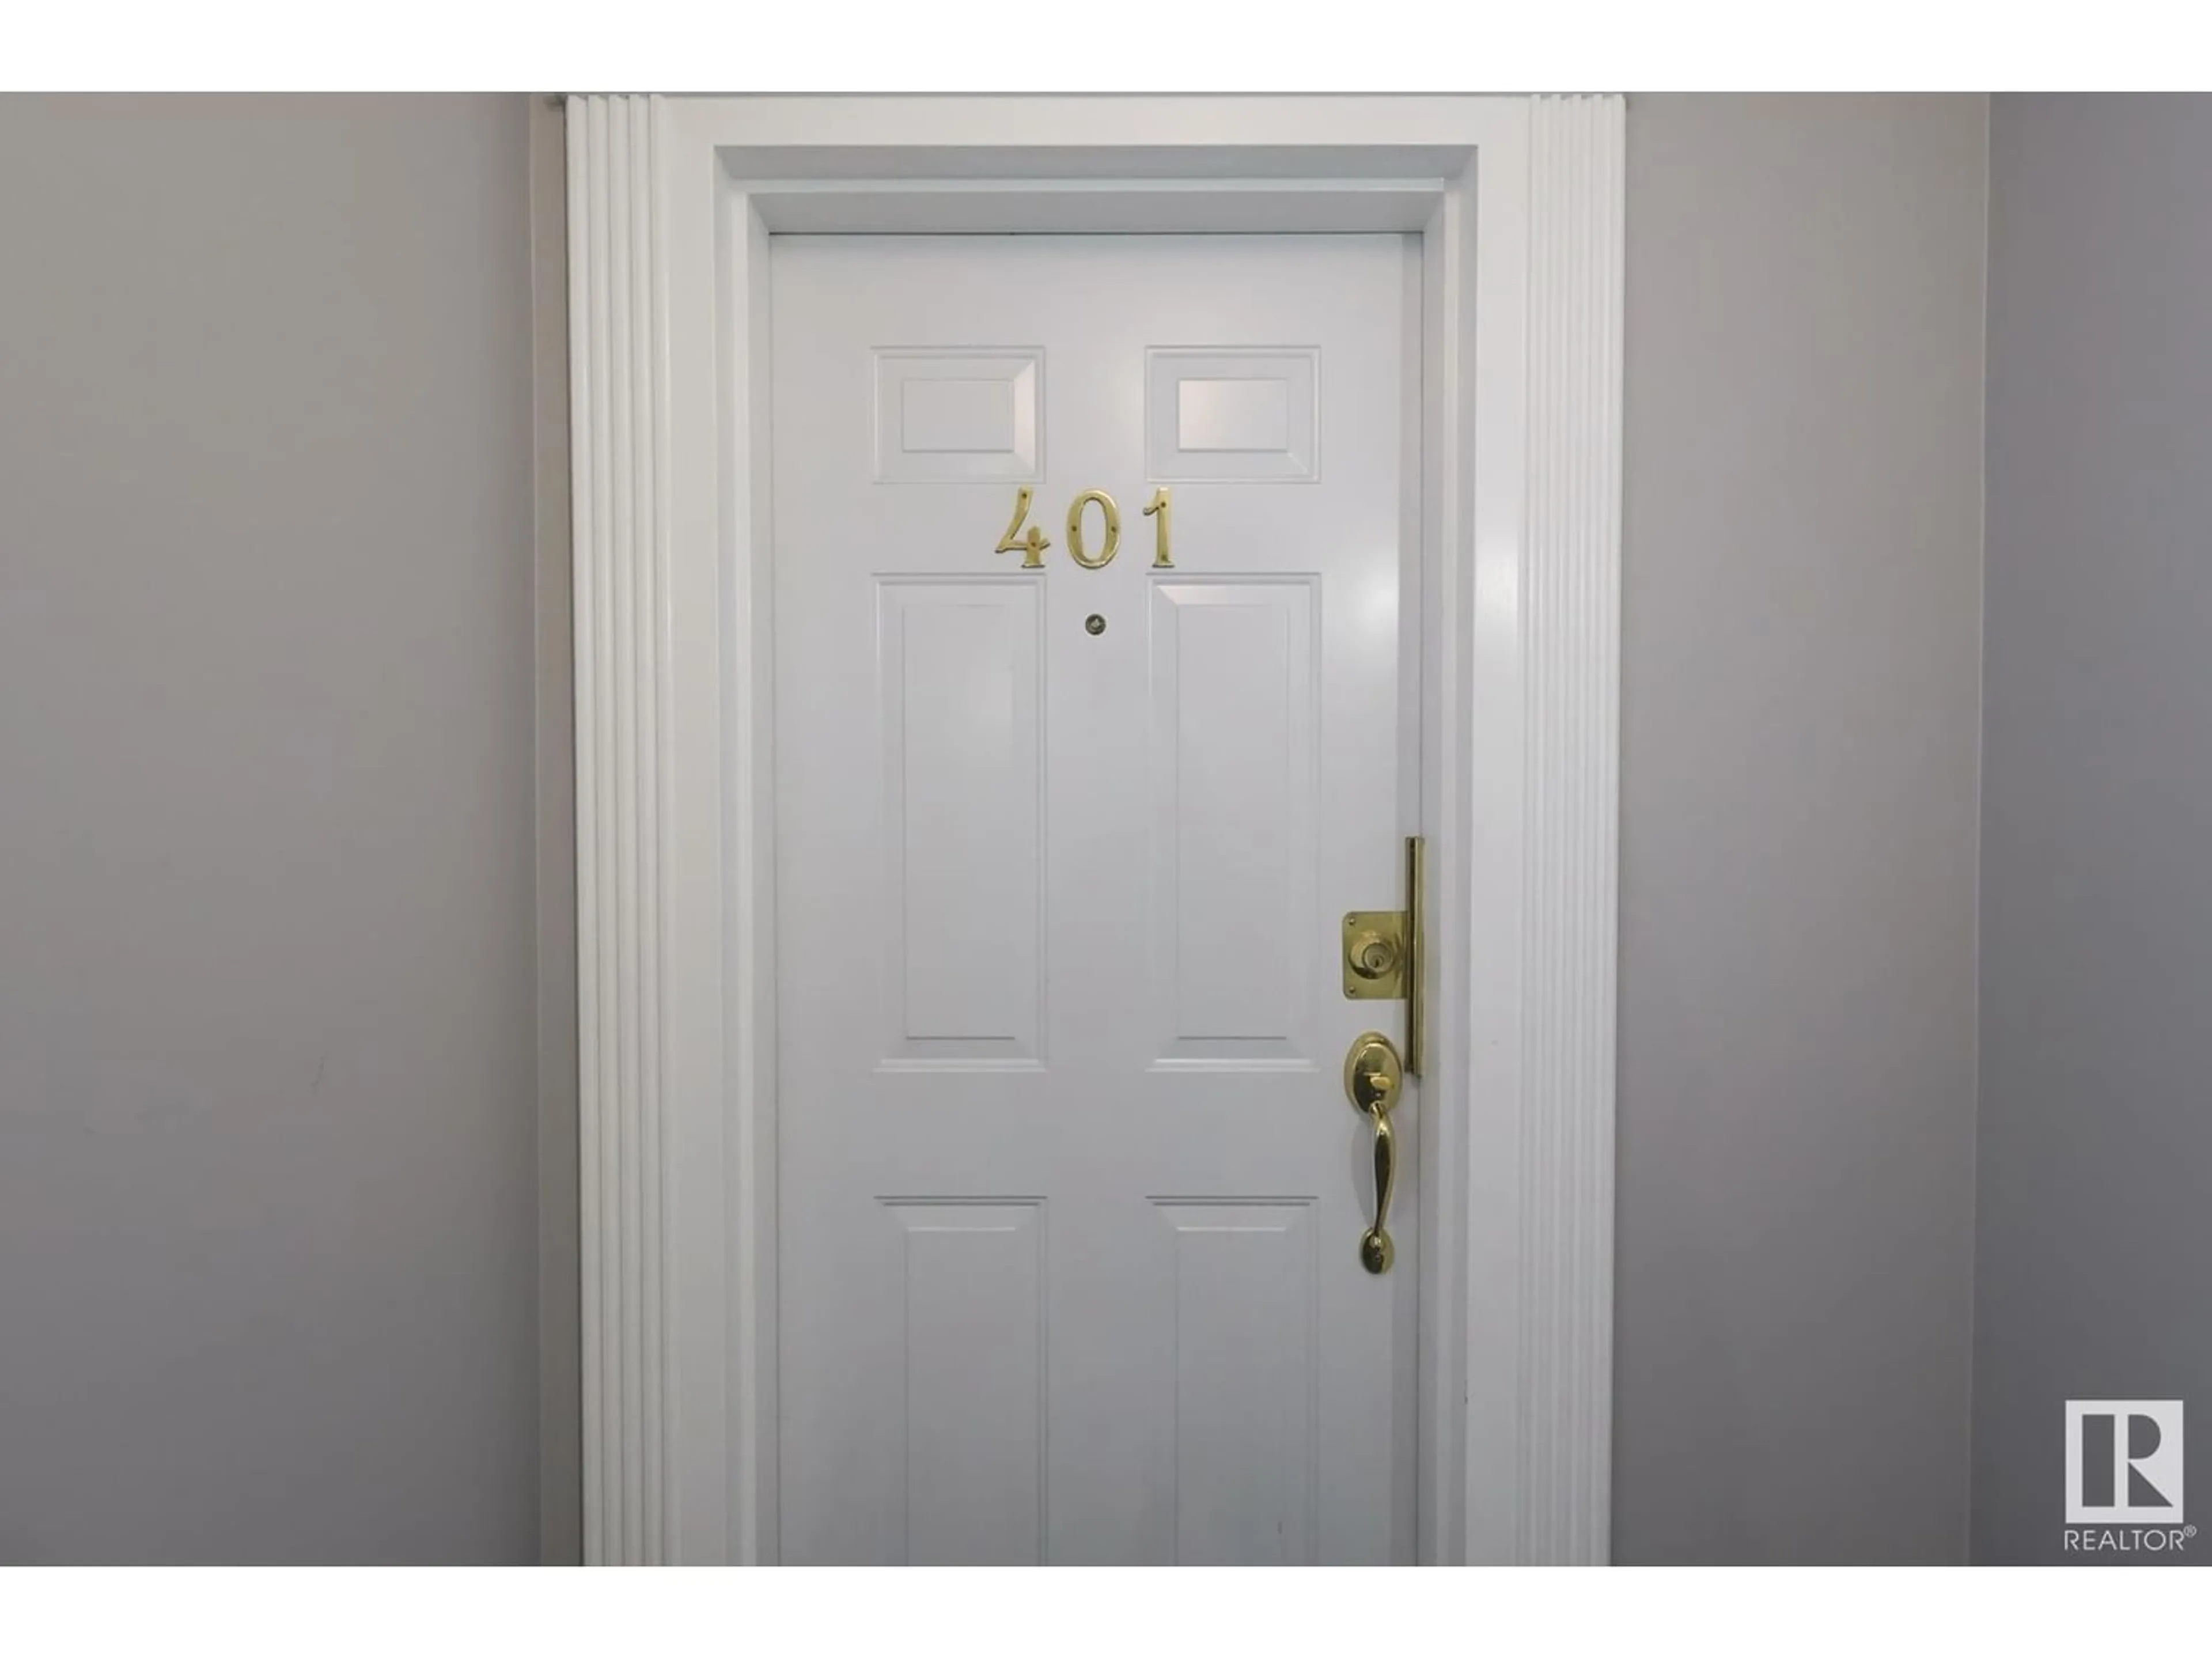 Indoor entryway for #401 10320 113 ST NW, Edmonton Alberta T5K1P6